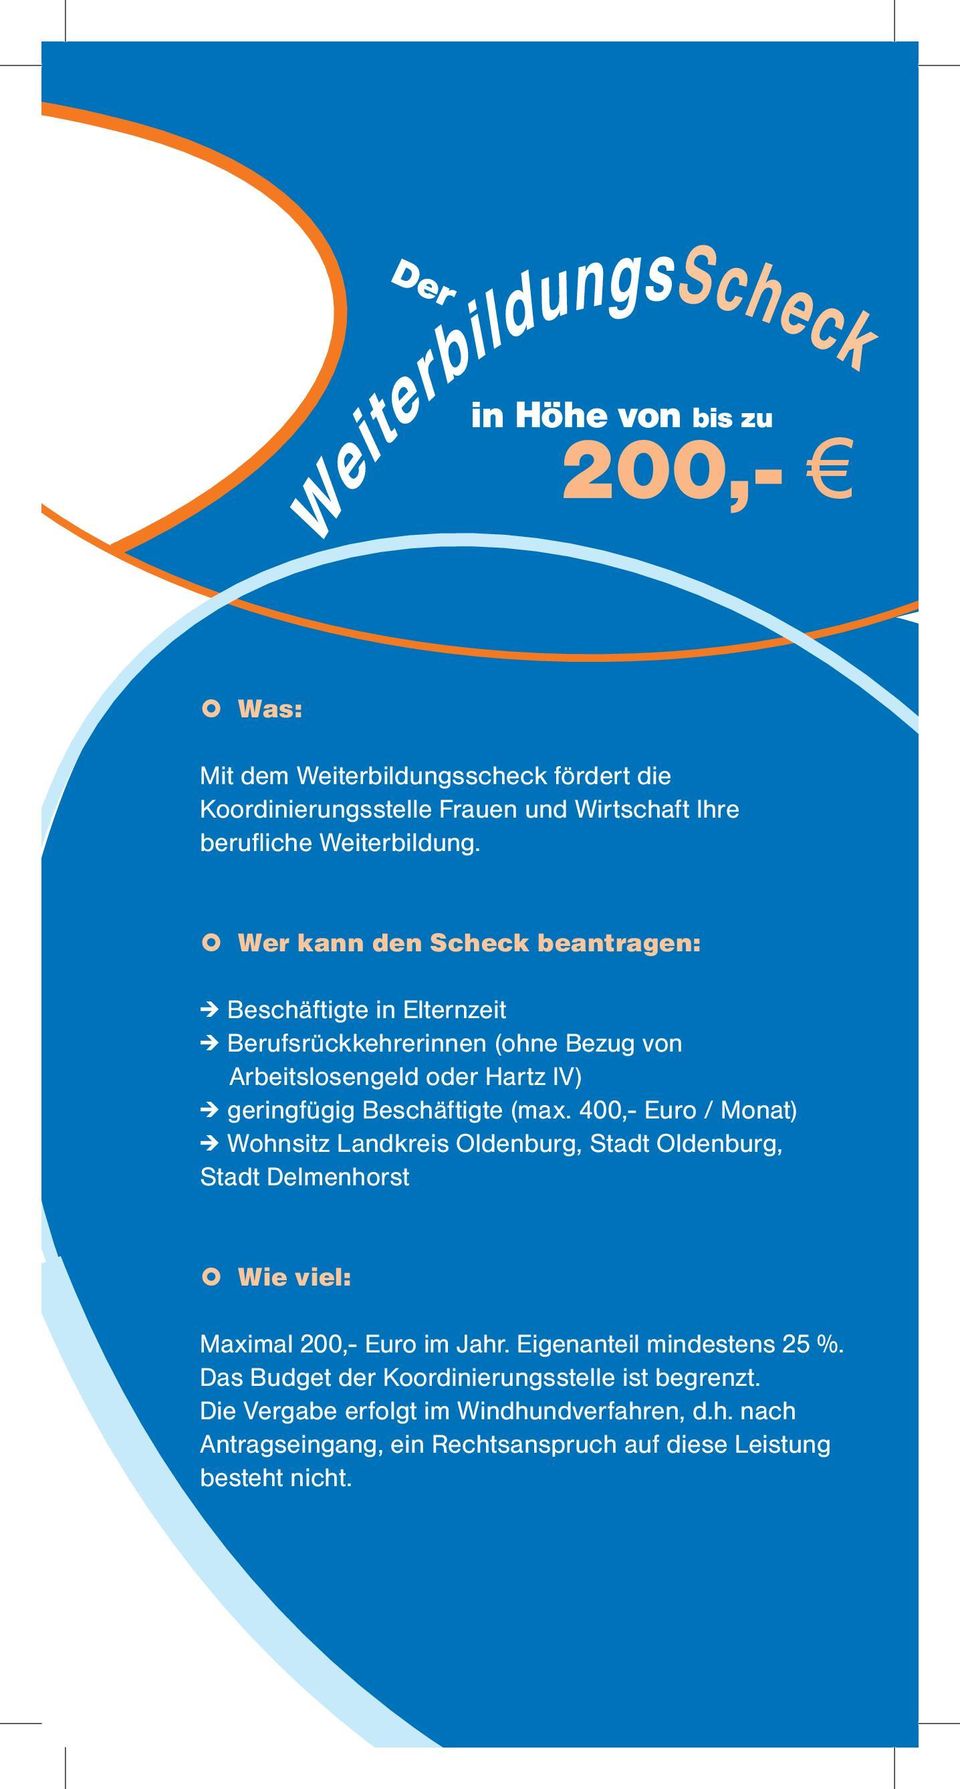 (max. 400,- Euro / Monat) # Wohnsitz Landkreis Oldenburg, Stadt Oldenburg, Stadt Delmenhorst Wie viel: Maximal 200,- Euro im Jahr. Eigenanteil mindestens 25 %.